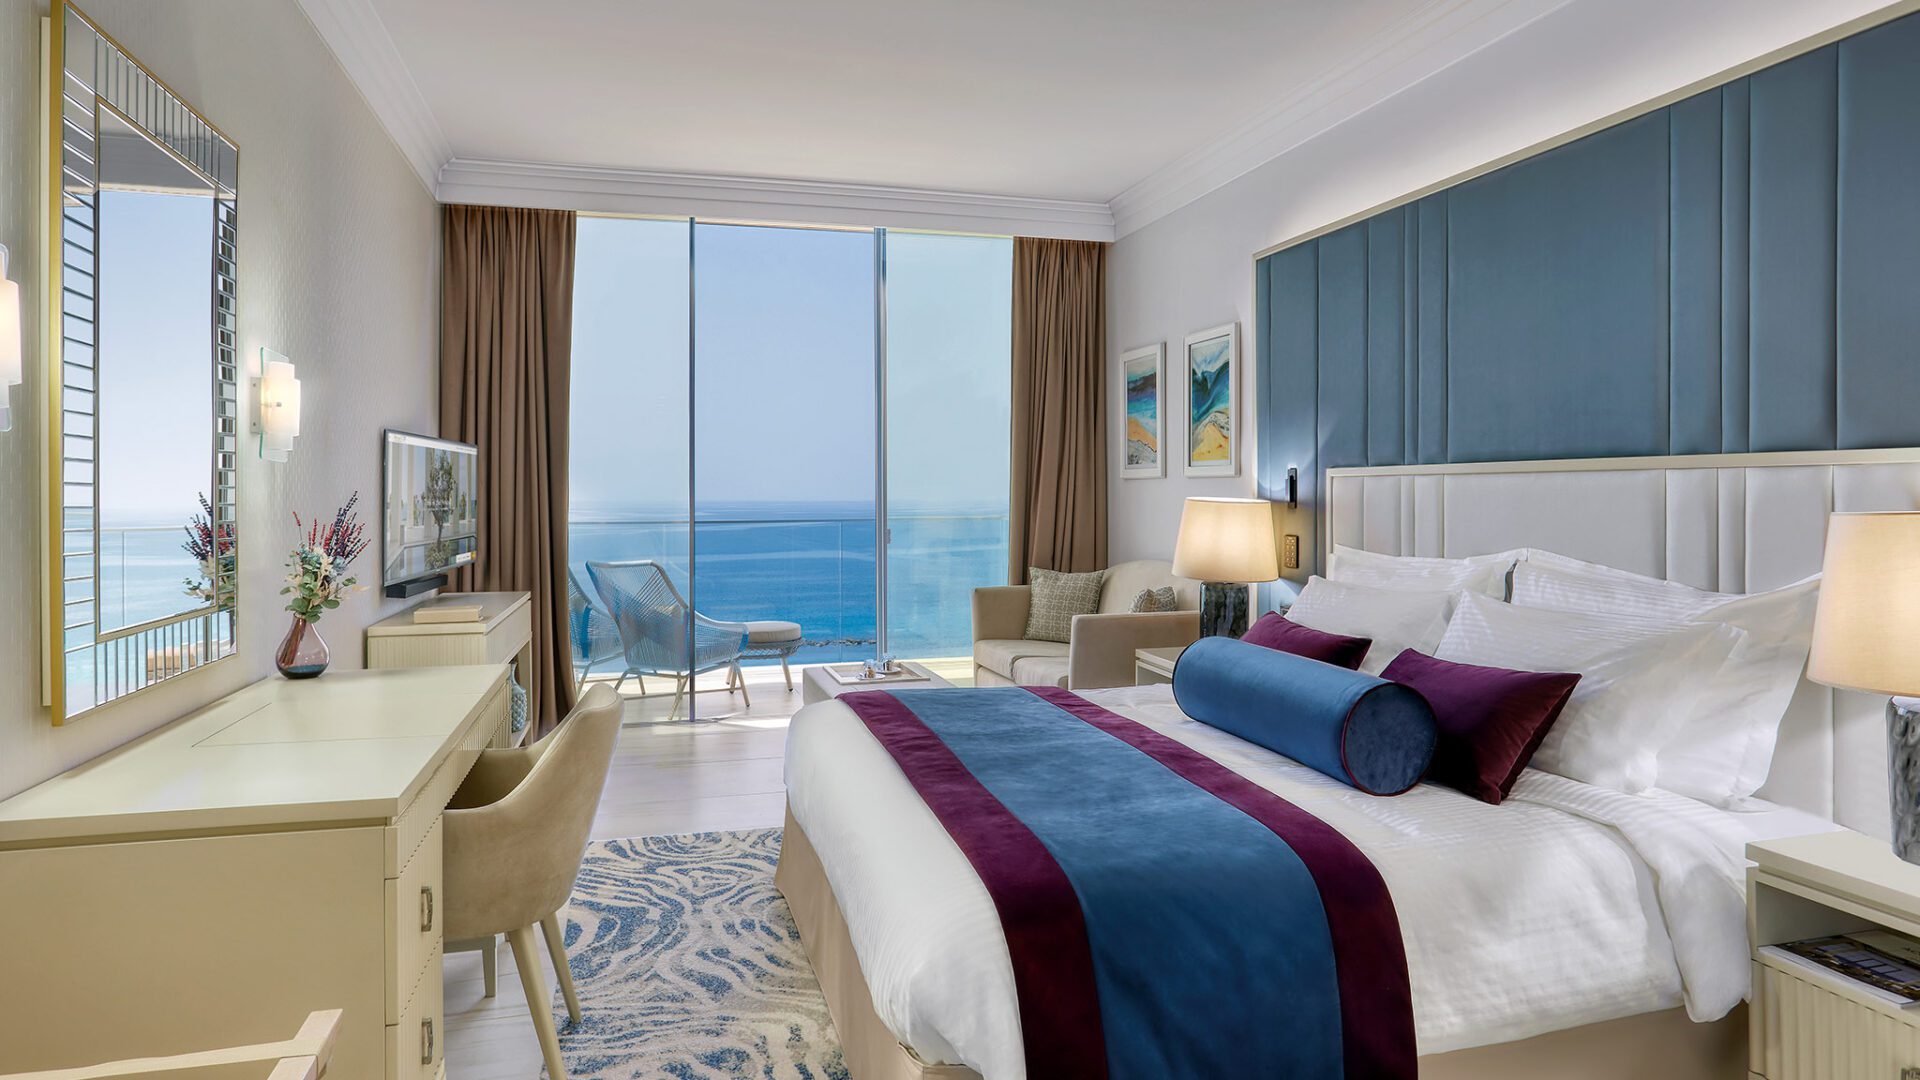 Romantic Sea Room at Amavi Hotel in Paphos